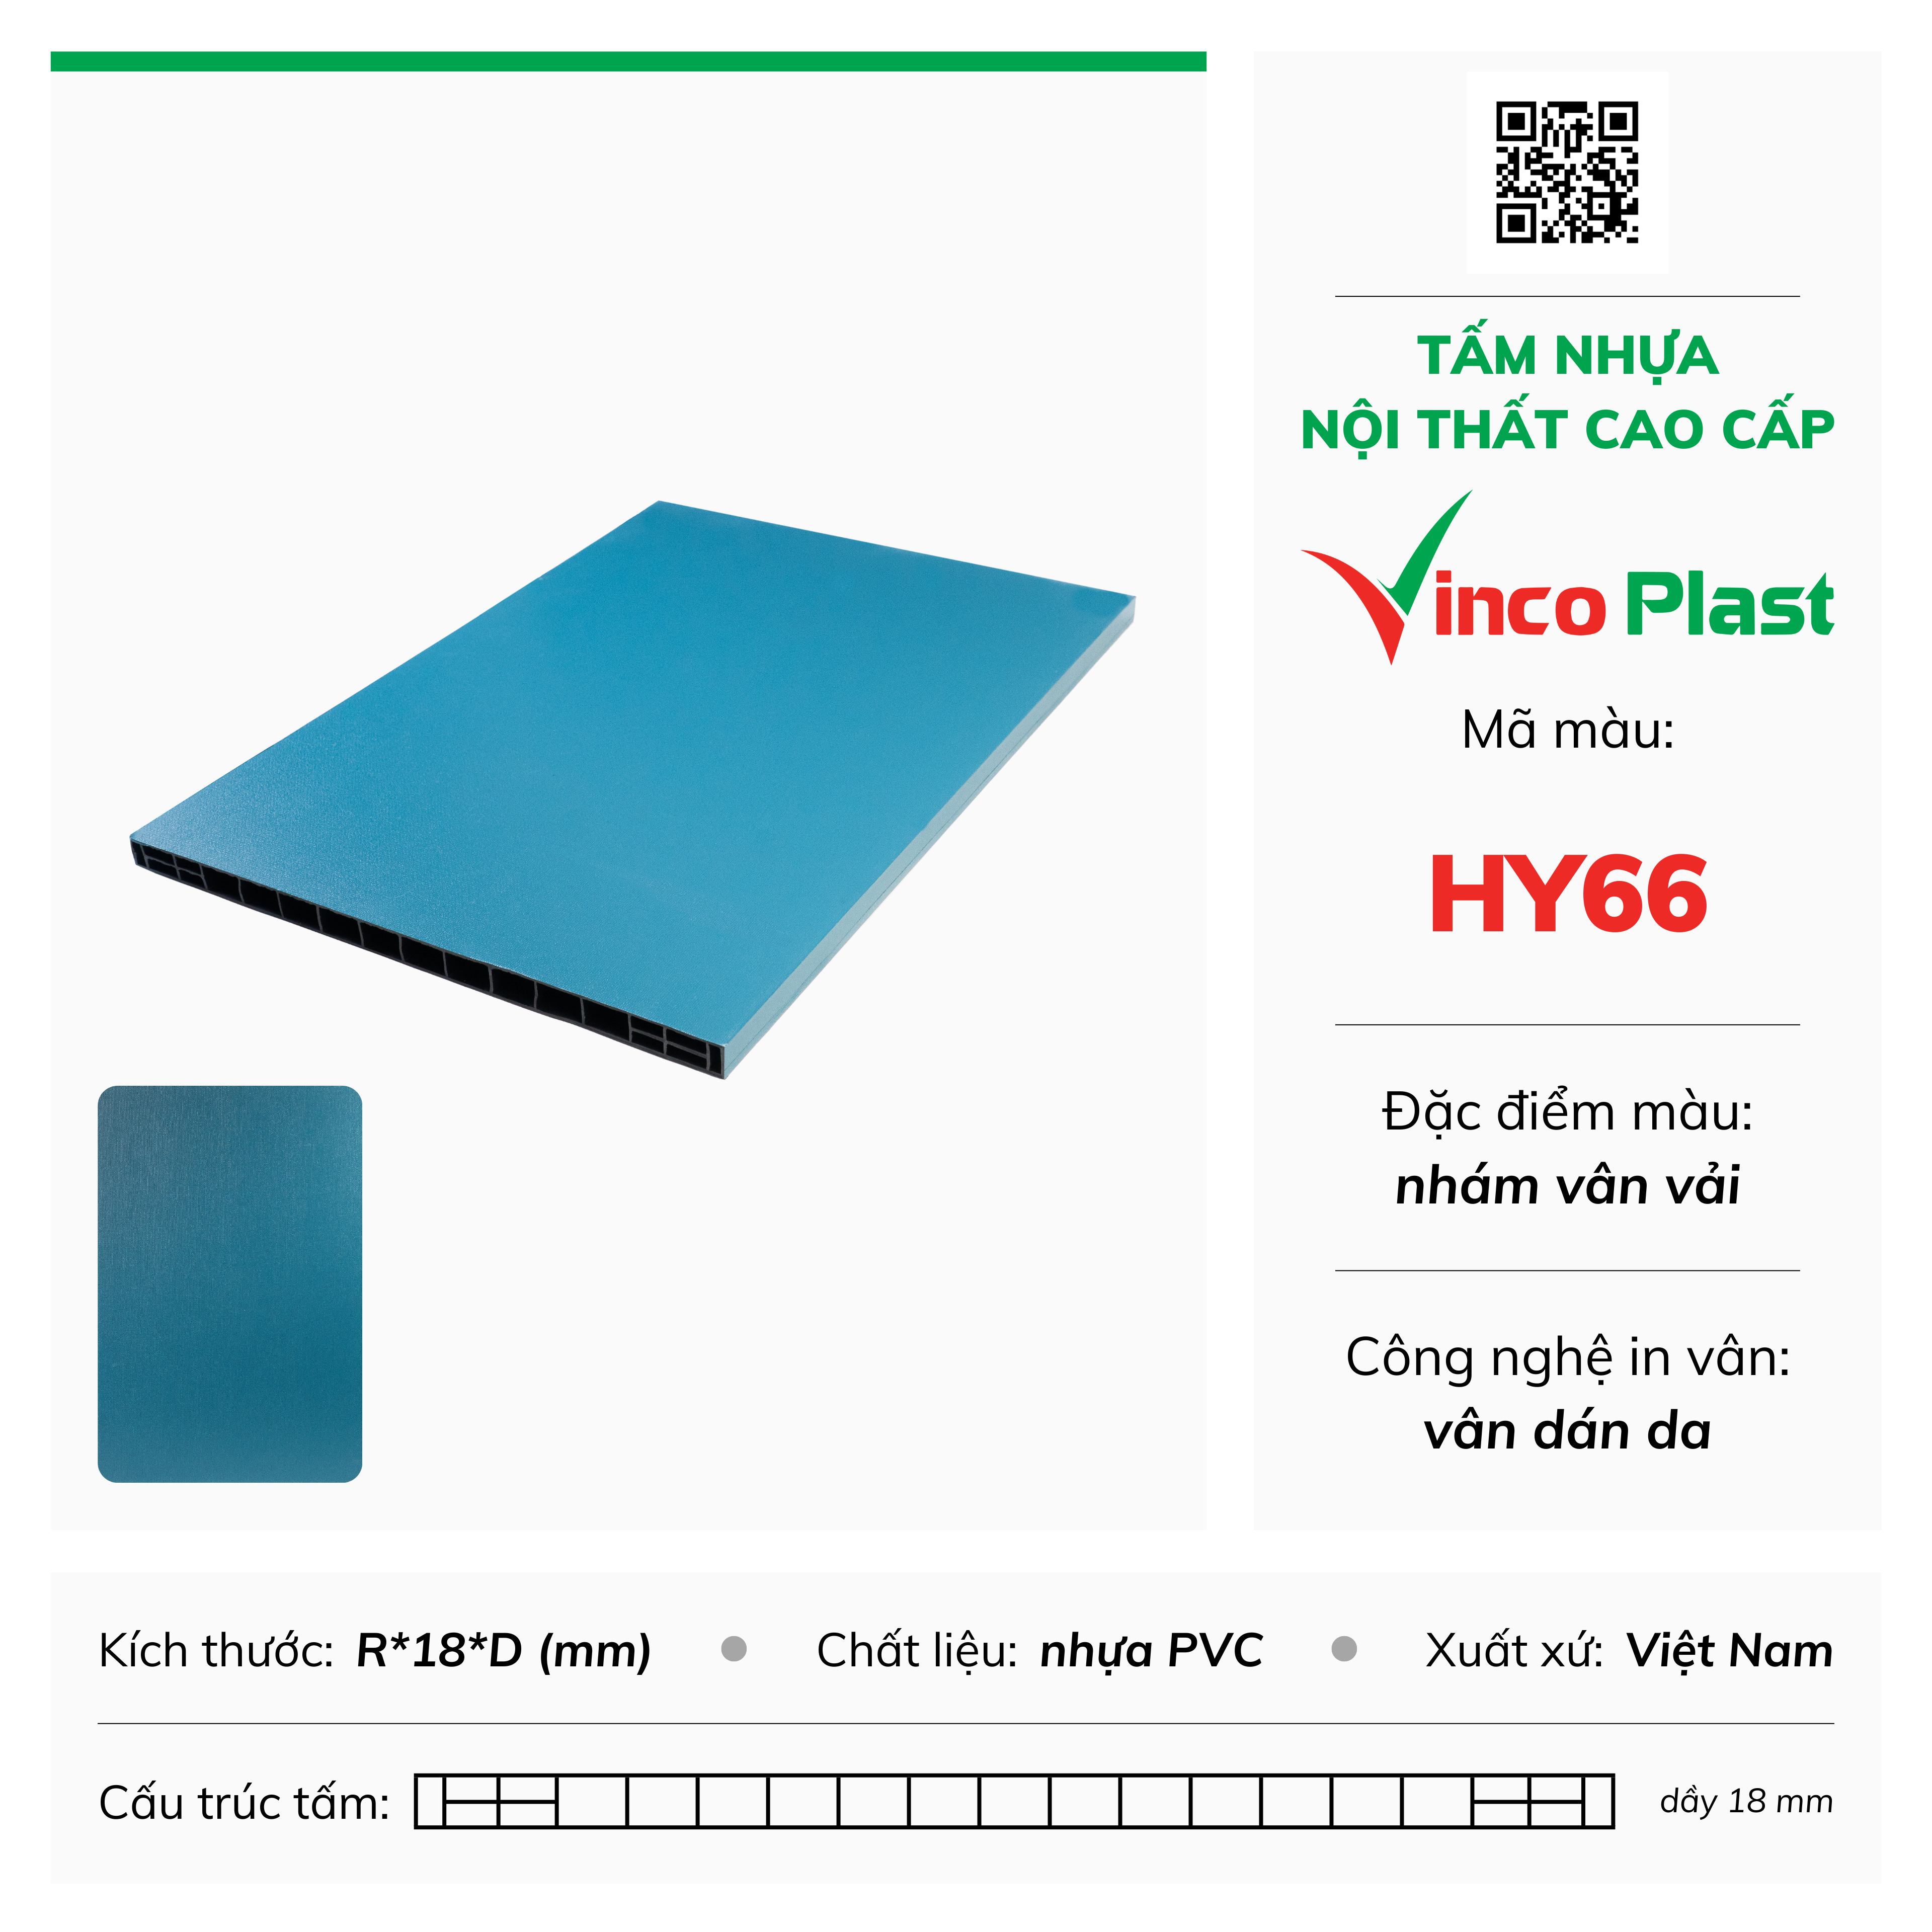 Tấm nhựa nội thất cao cấp Vincoplast màu hy66